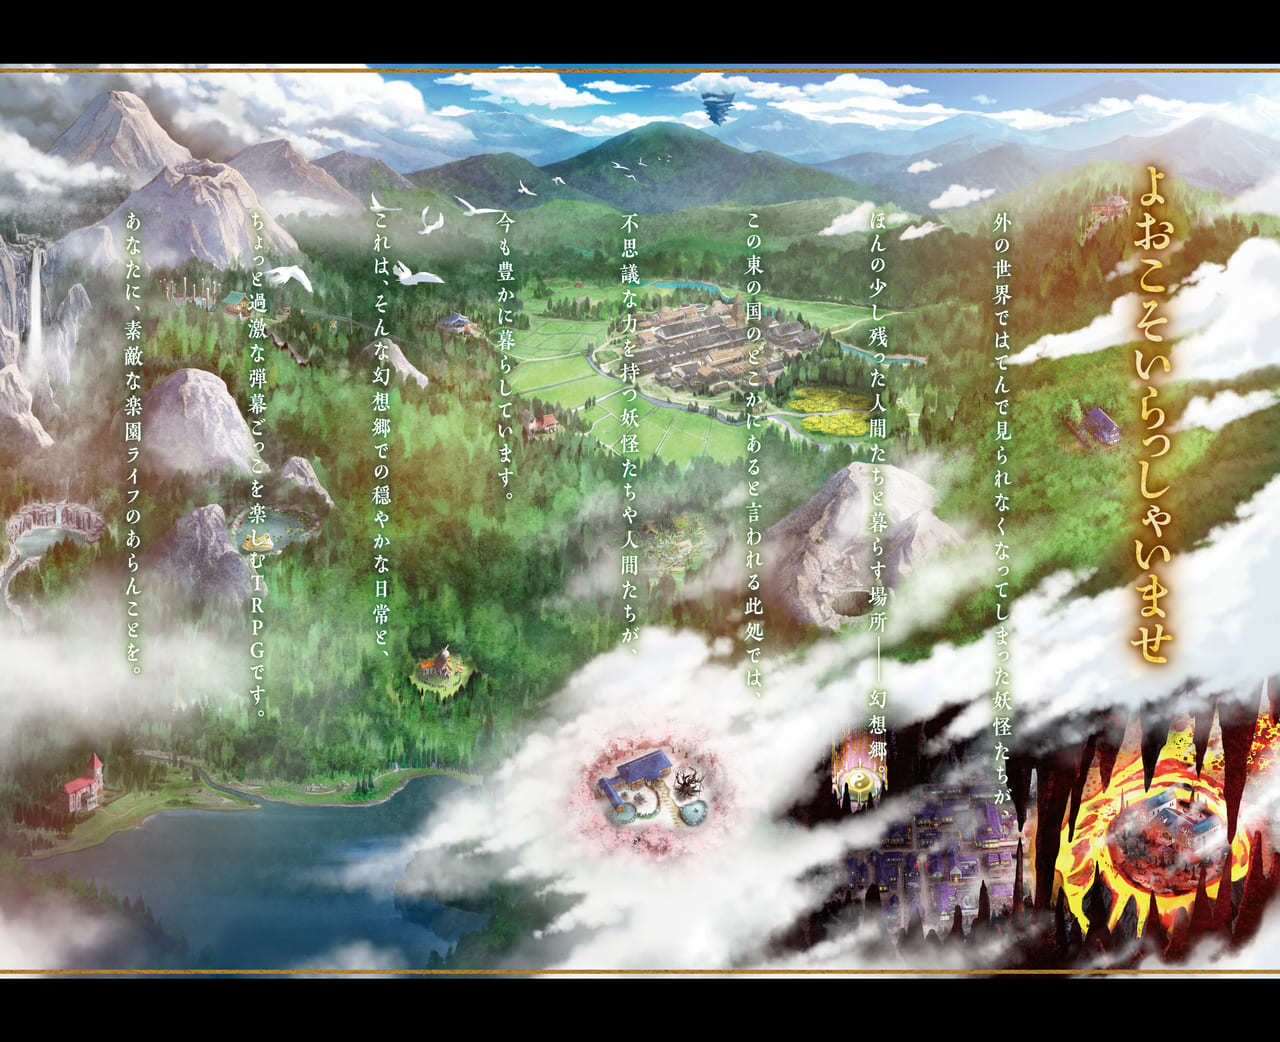 「東方Project」のTRPG『幻想ナラトグラフ』9月20日に発売決定1